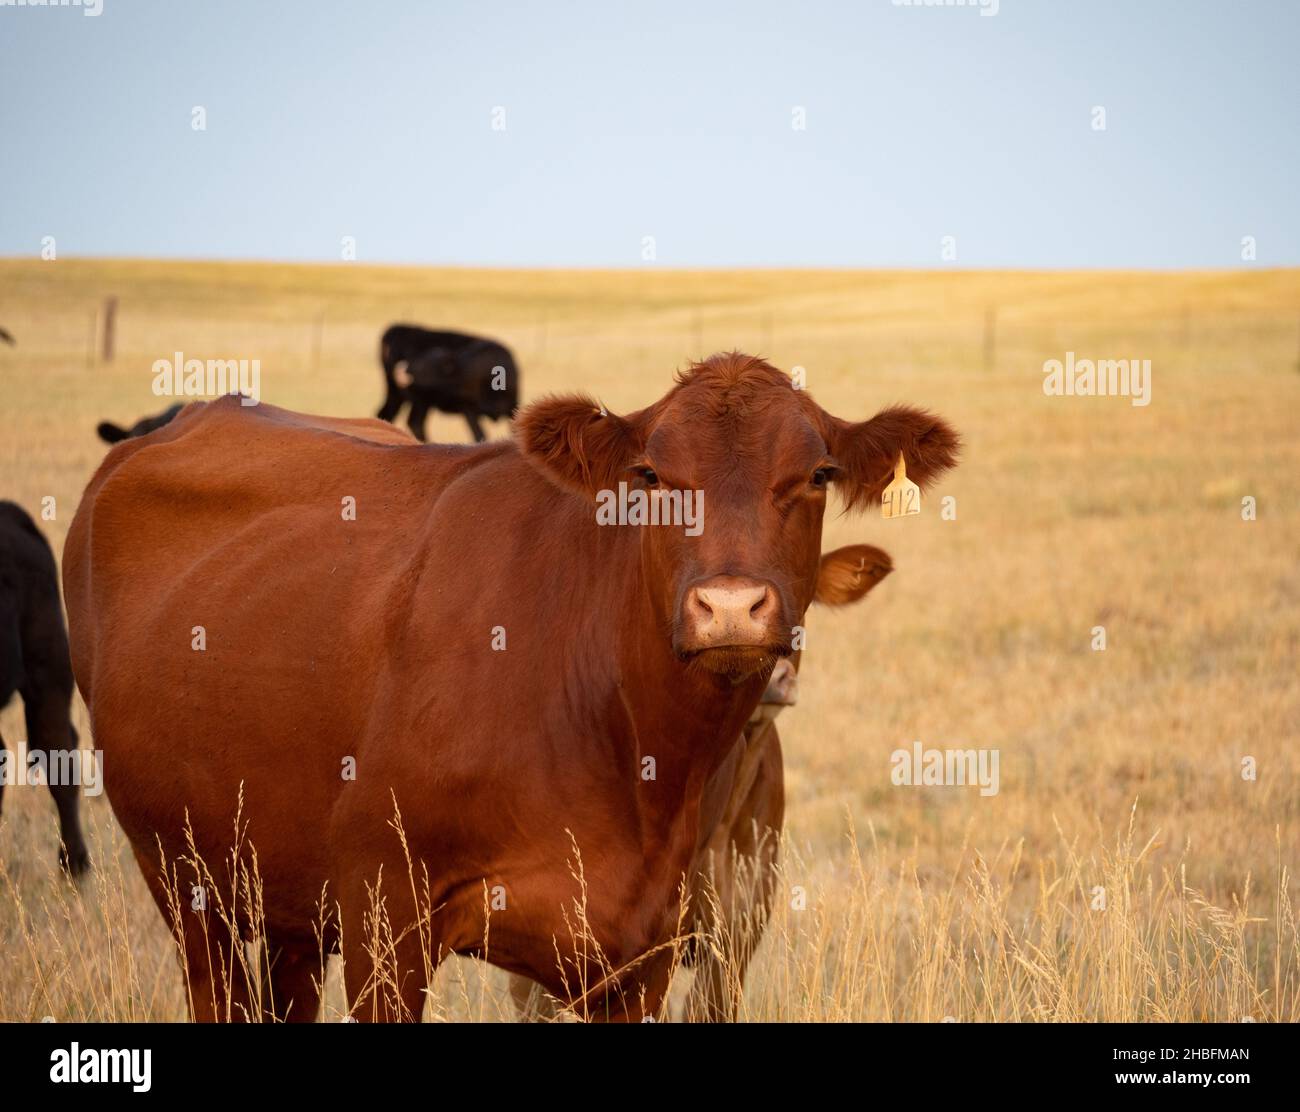 Portrait d'une vache Angus rouge à fourrure brun rougeâtre debout dans un champ avec de l'herbe séchée faisant face à l'appareil photo.Photographié avec une faible profondeur de champ Banque D'Images